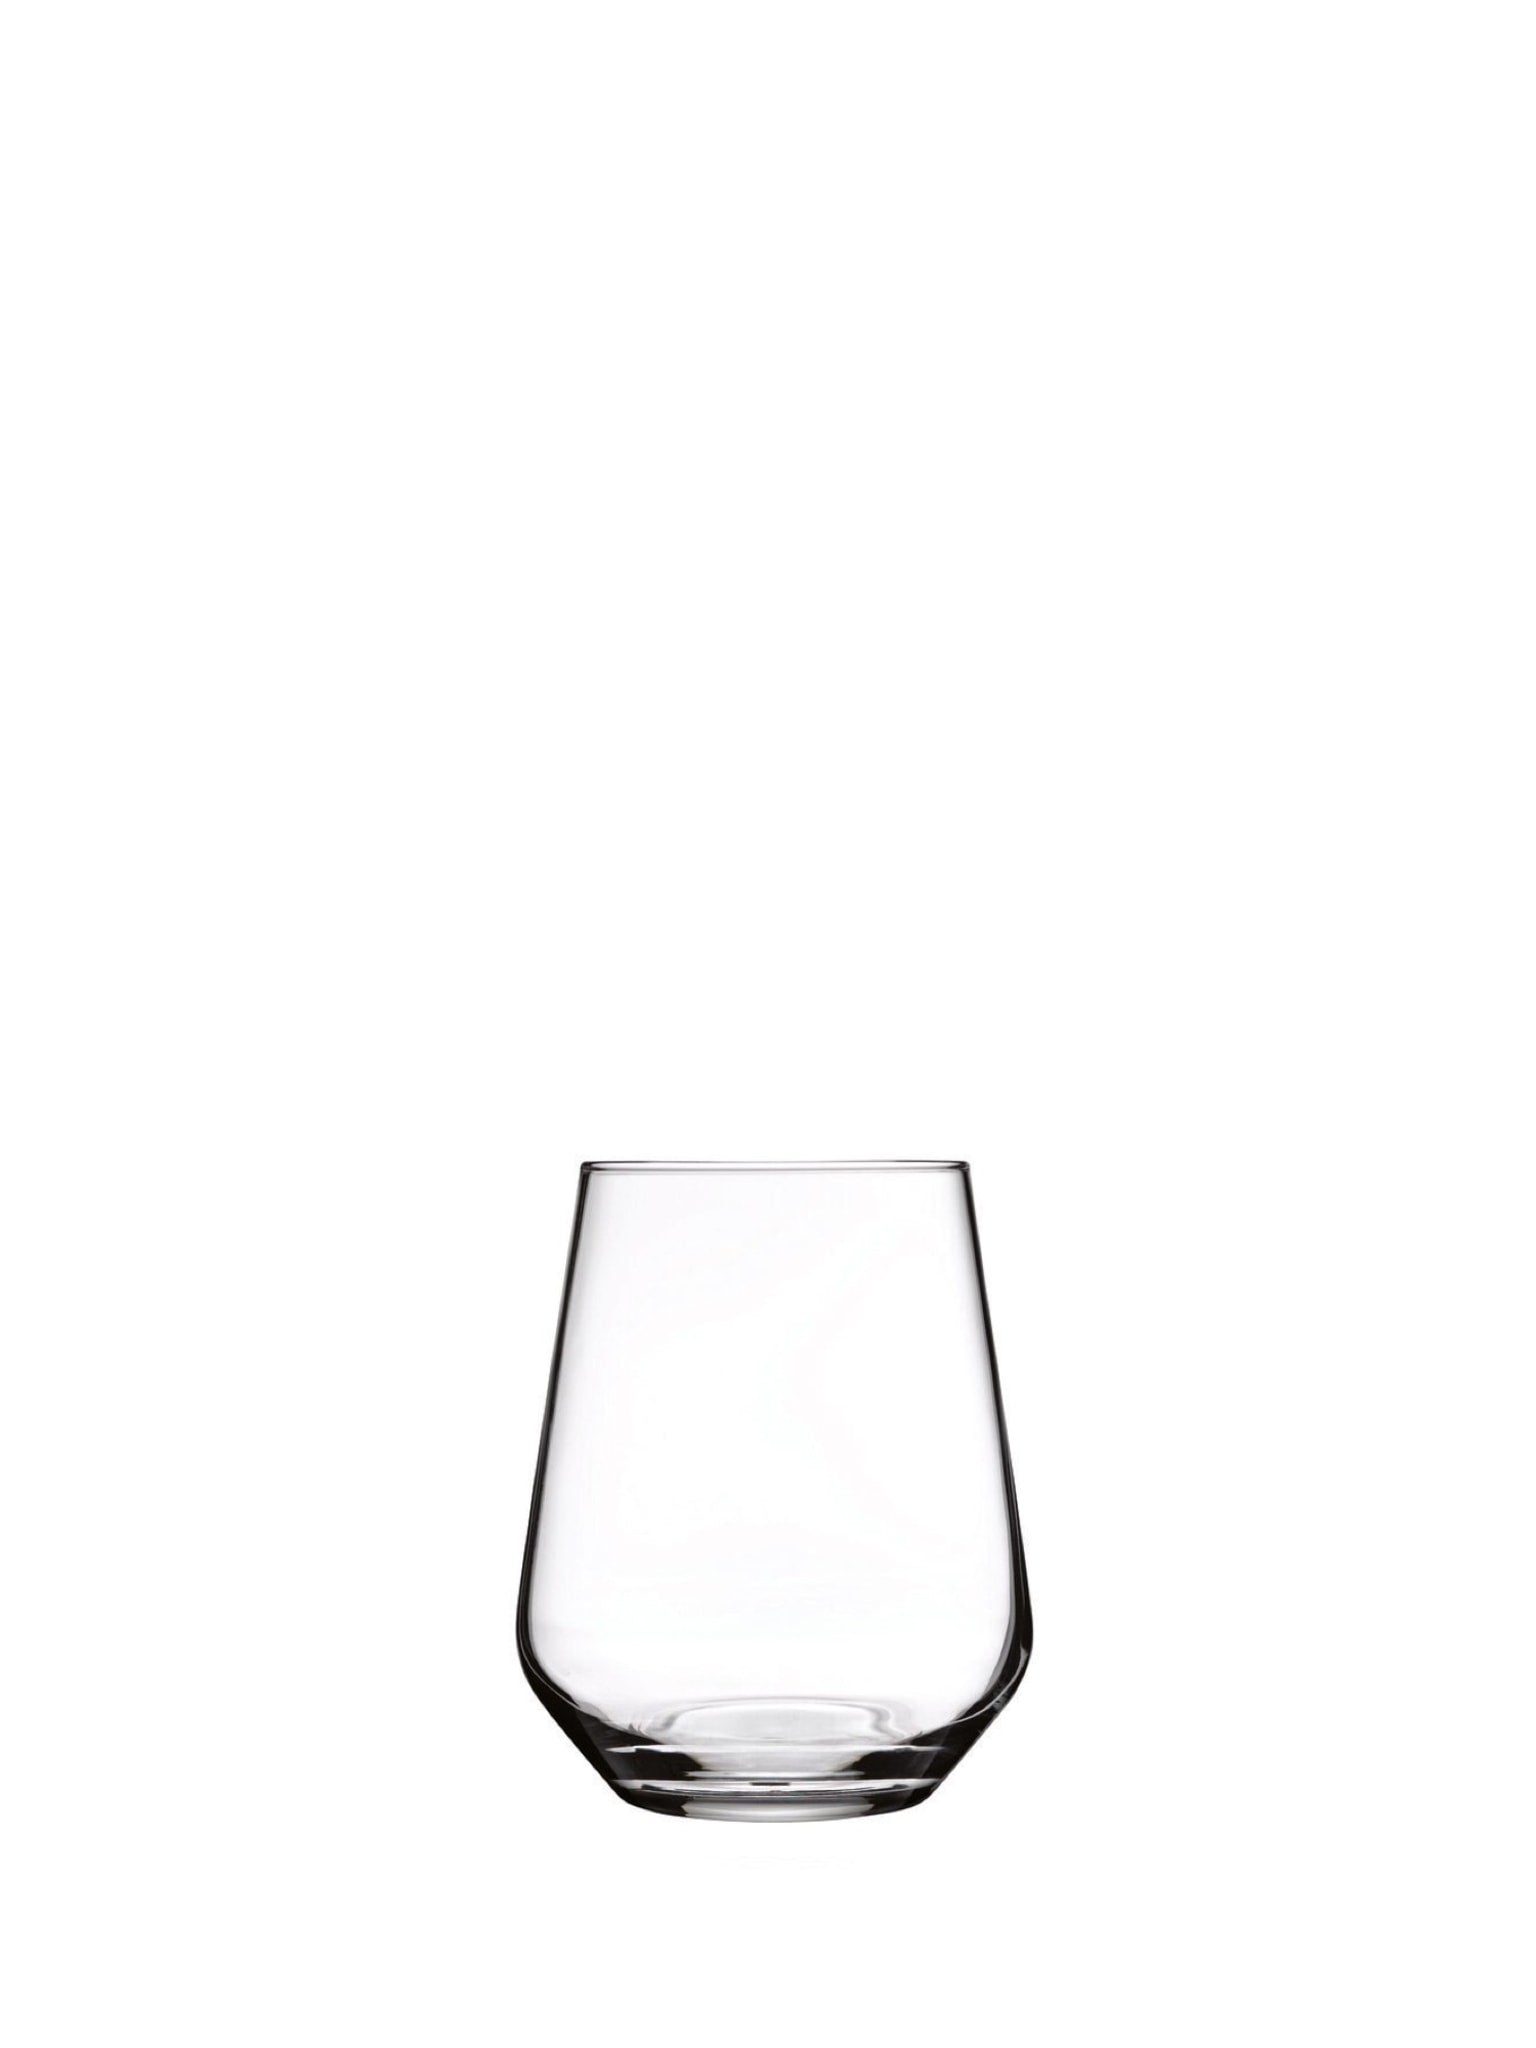 Allegra vandglas - Et elegant og holdbart glas til servering af vand eller andre drikkevarer.